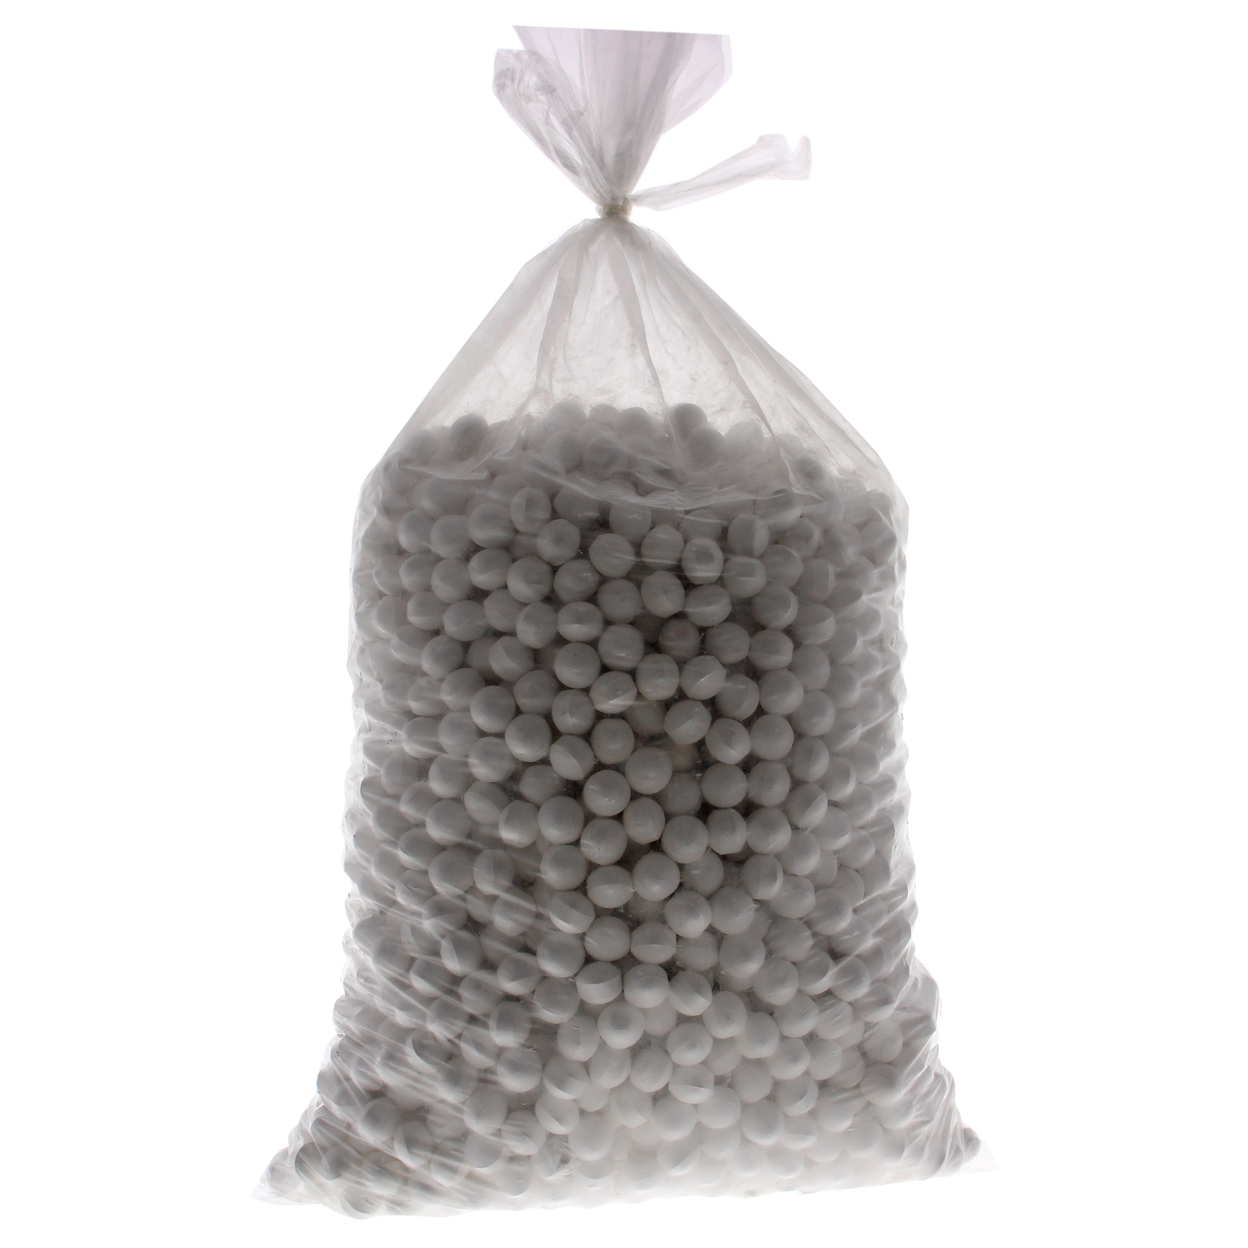 Cuccio Naturale Soak Balls Effervescent - Milk And Honey Nail Treatment 2400 Pc